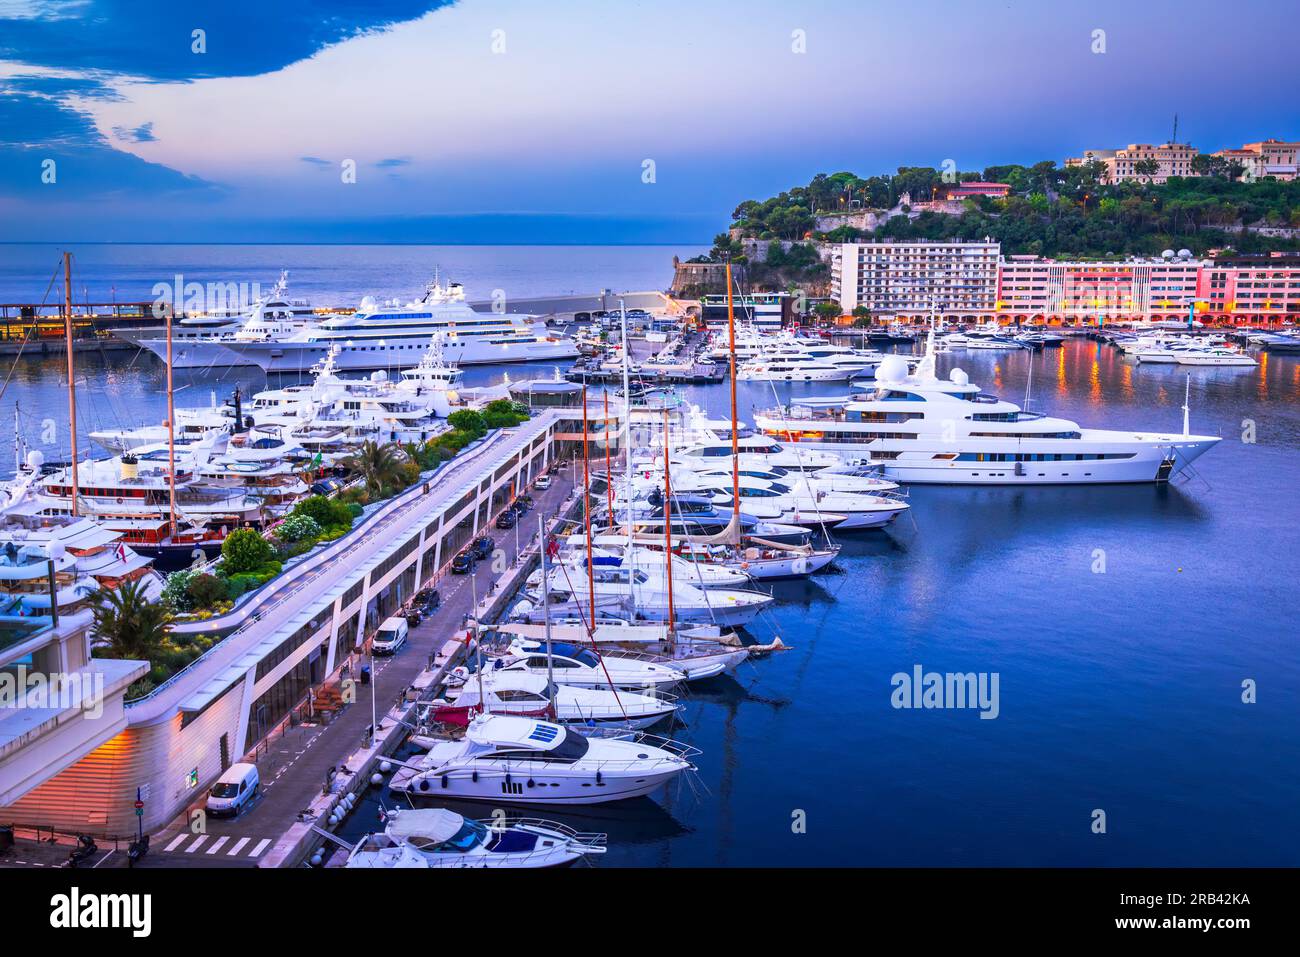 Monaco. Port de Monaco and yacht marina, morning cloudy twilight on French Riviera. Stock Photo